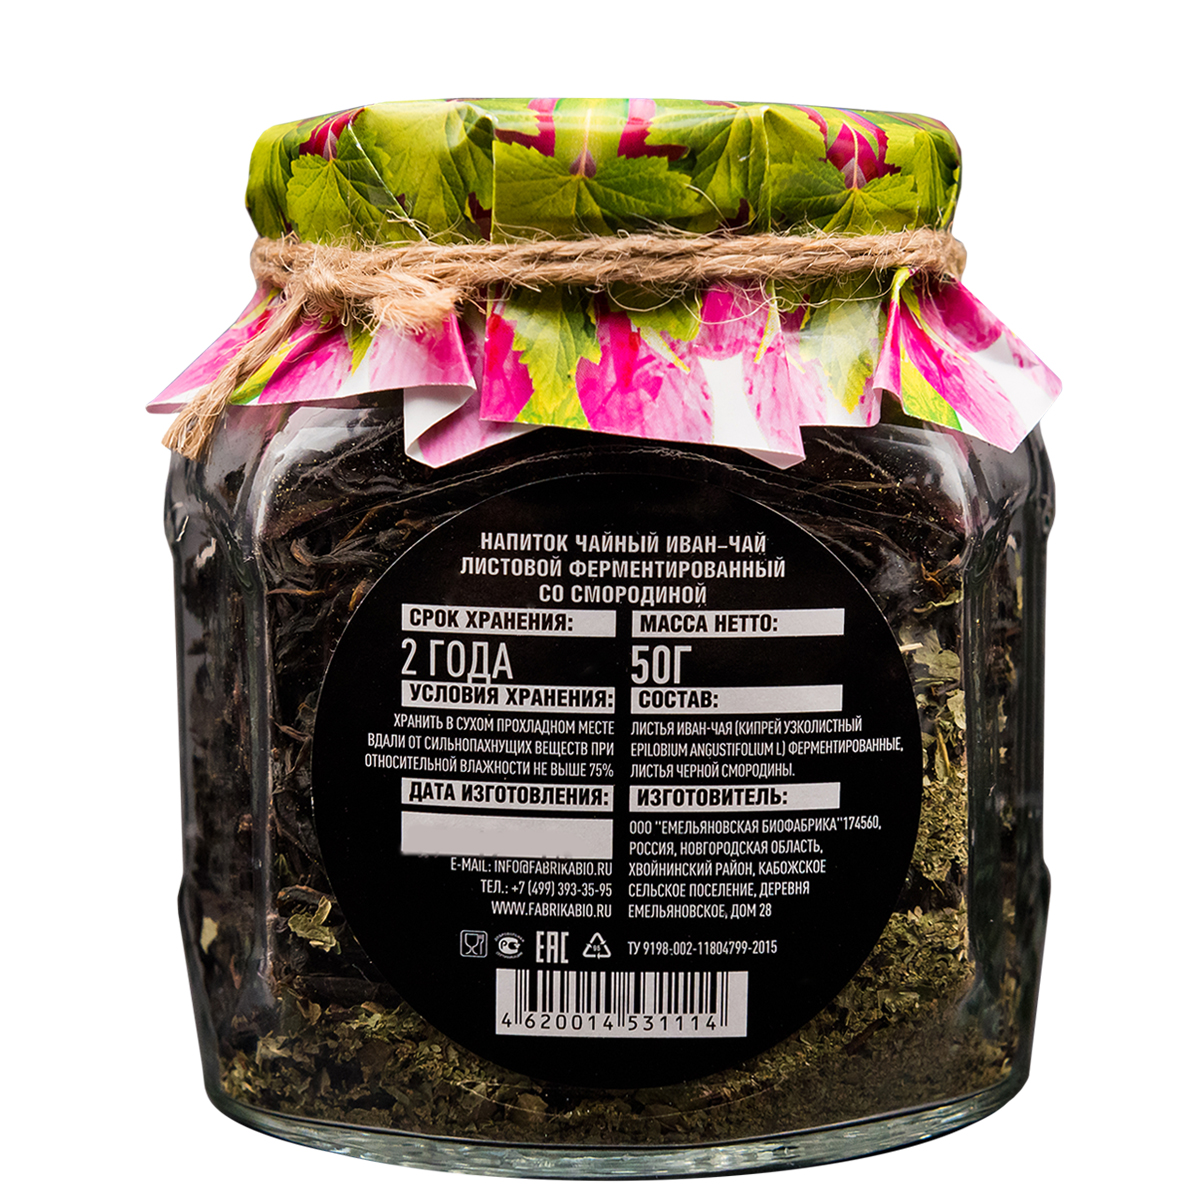 Чай Емельяновская Биофабрика иван-чай в стеклянной банке с листьями смородины ферментированный 50 г. - фото 3